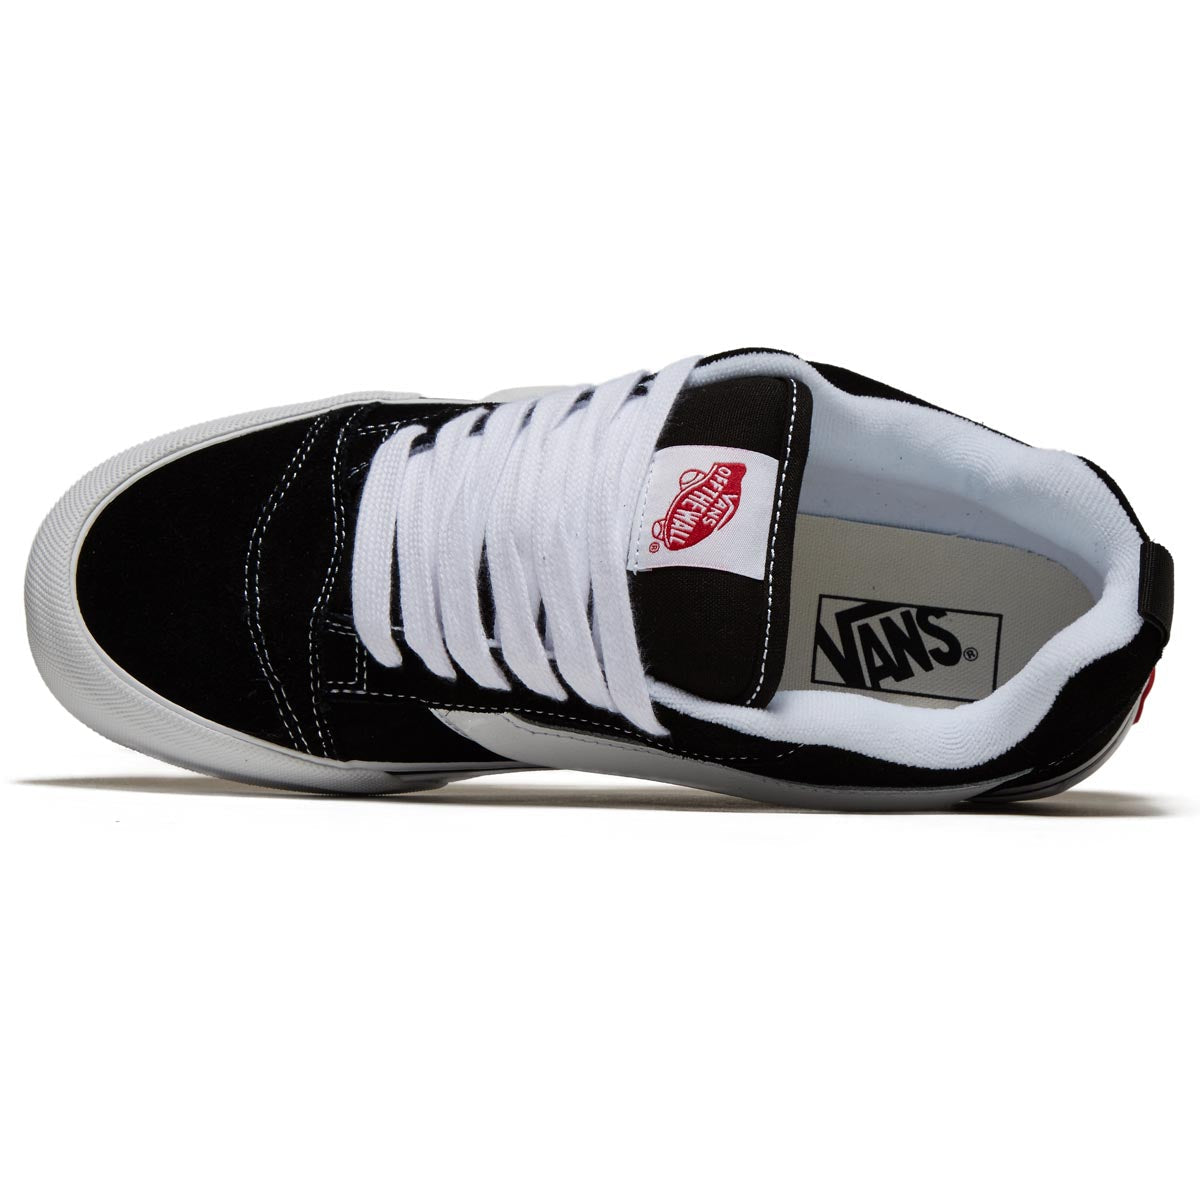 Vans Knu Skool Shoes - Black/White image 3